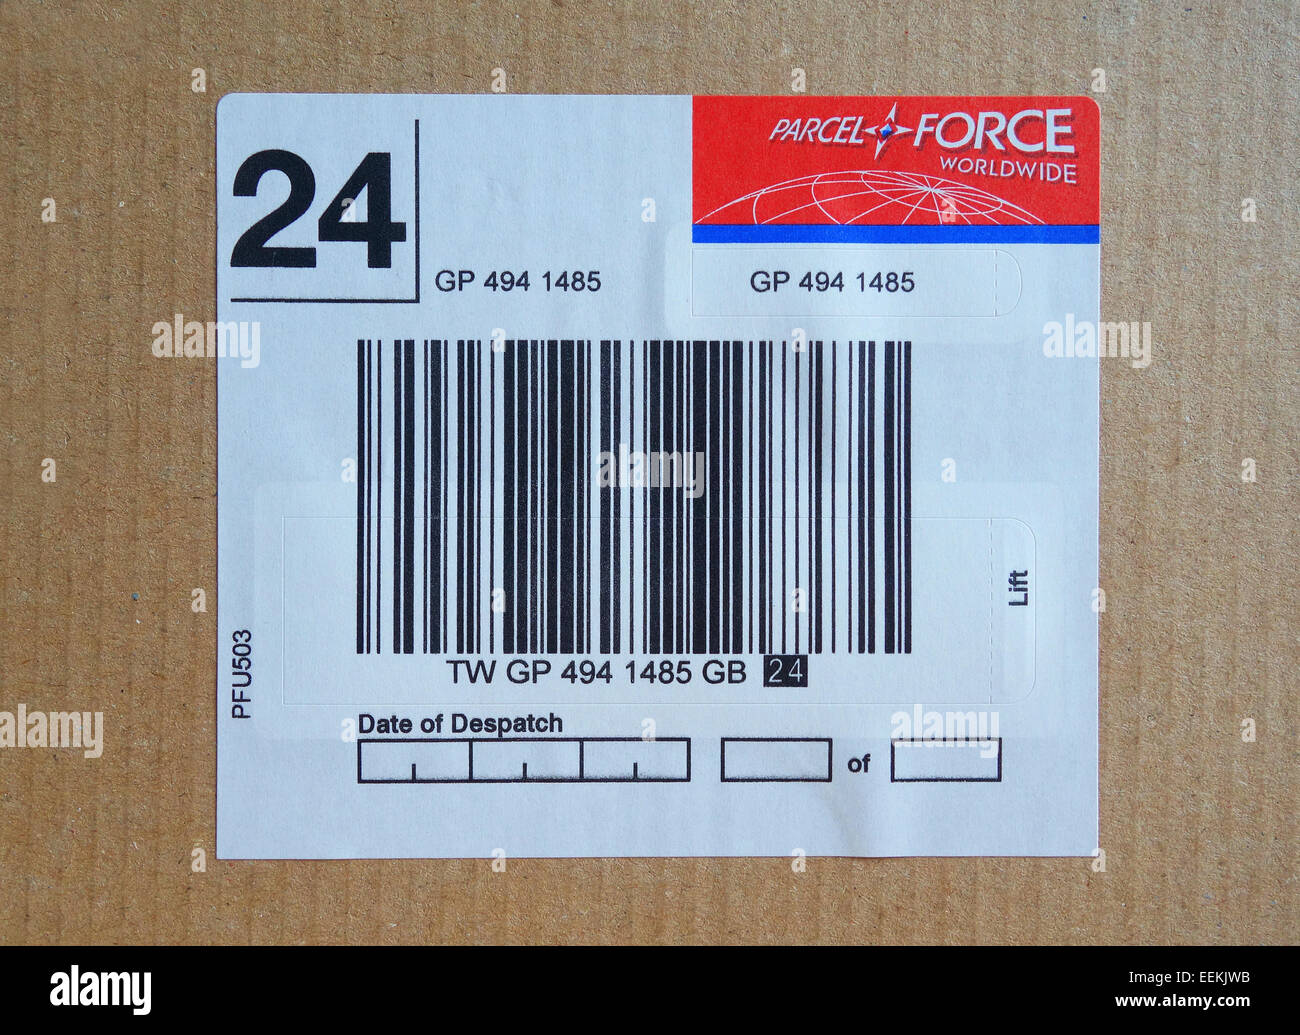 Ein Parcel Force Barcode auf Verpackung Stockfoto